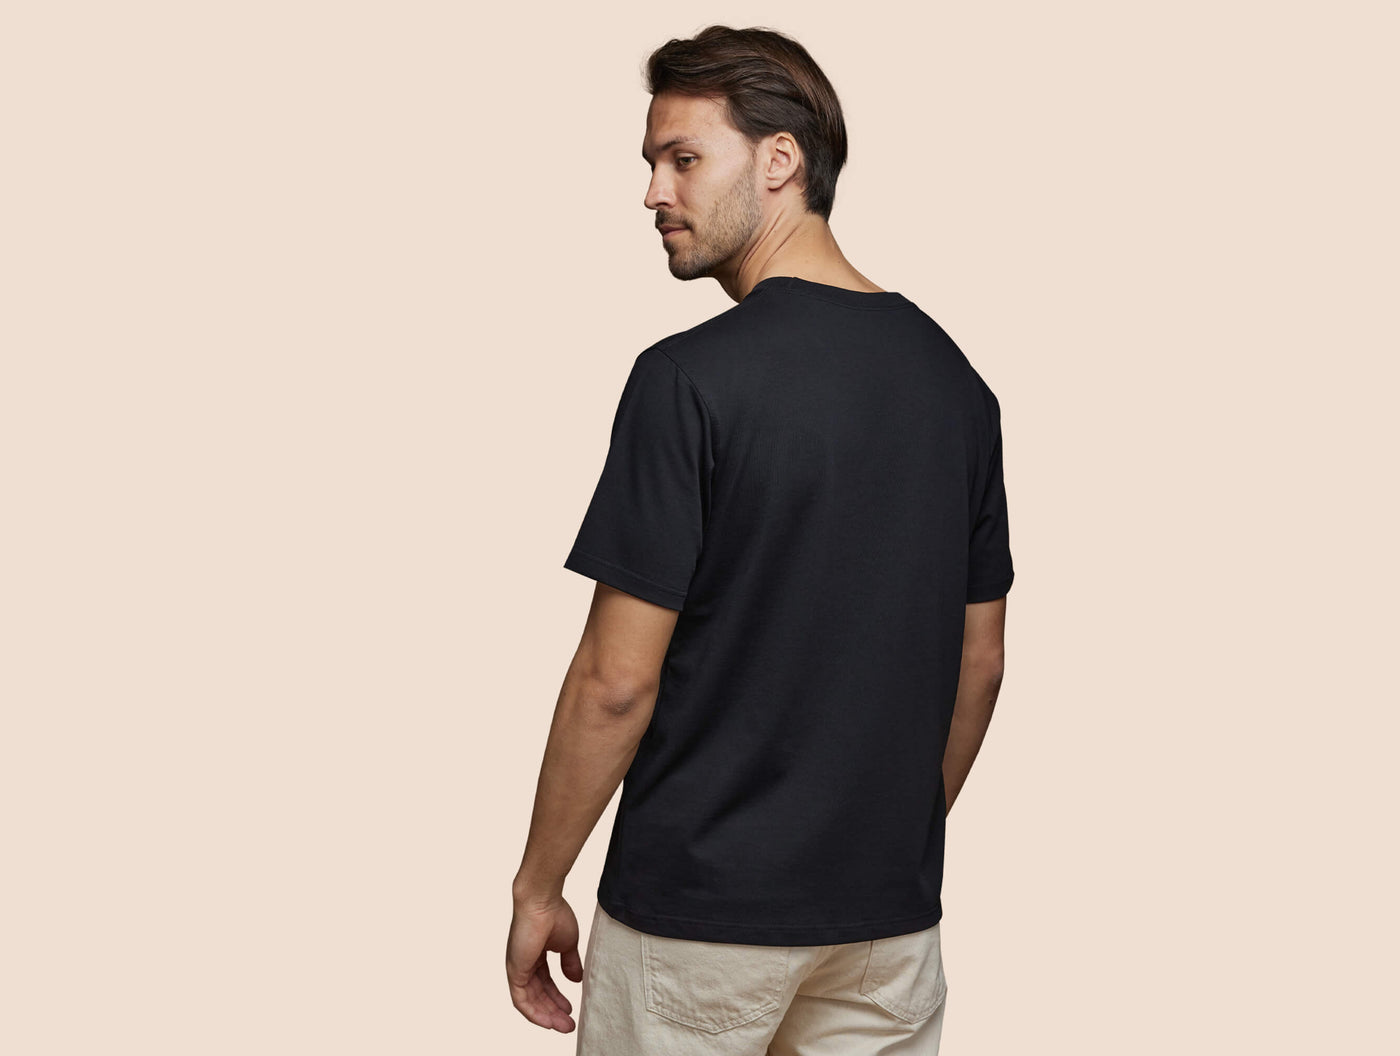 Pétrone T-shirt manches courtes coton pima micromodal noir homme#couleur_noir